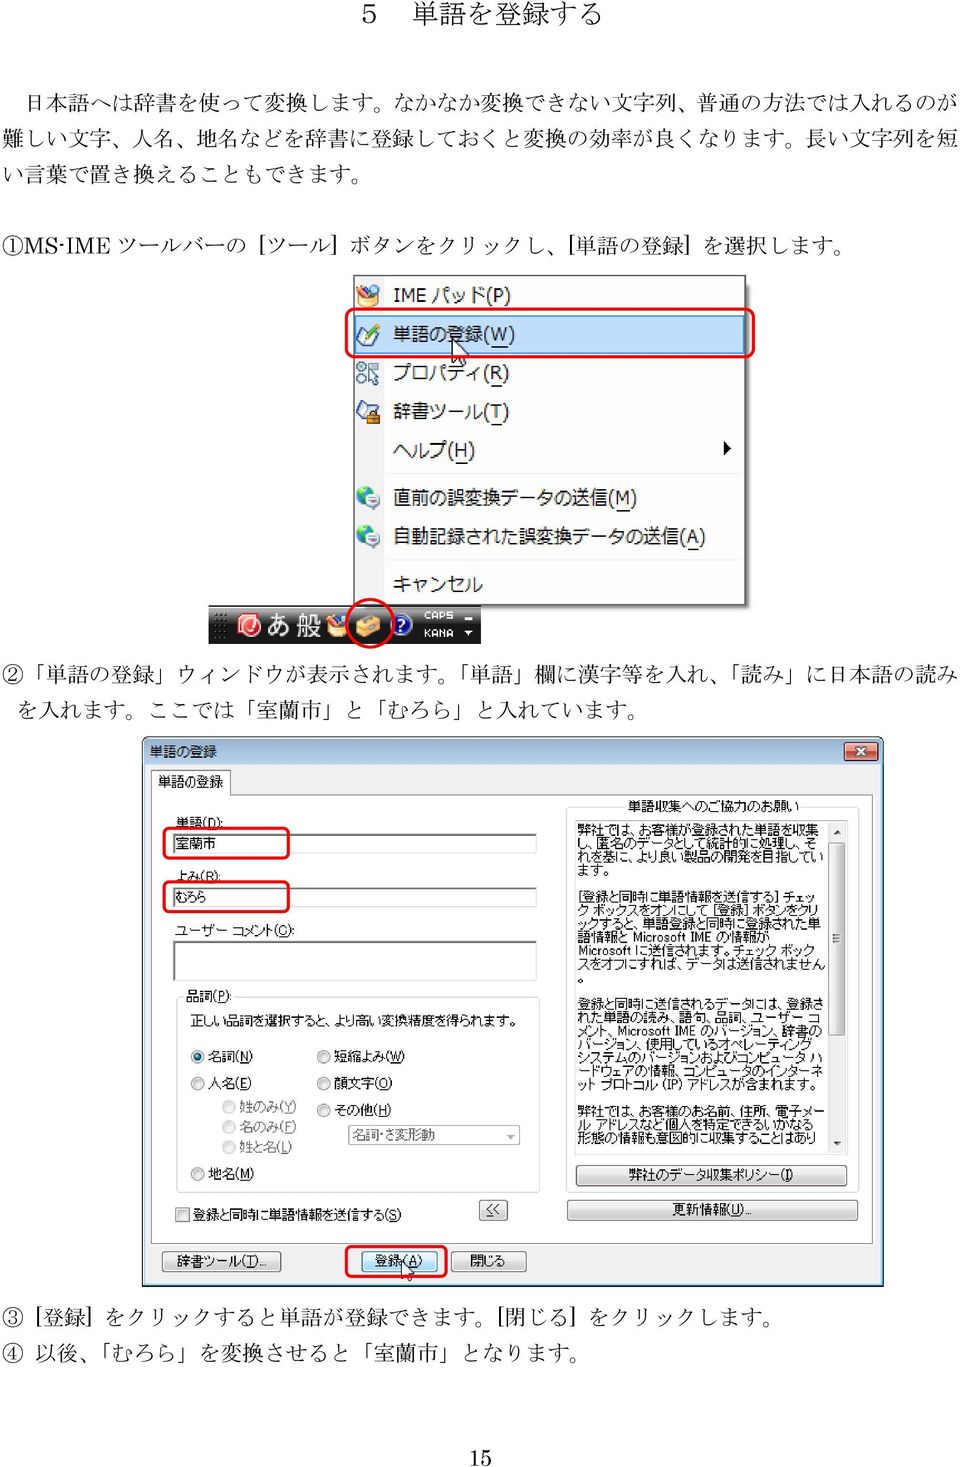 [ 単 語 の 登 録 ] を 選 択 します 2 単 語 の 登 録 ウィンドウが 表 示 されます 単 語 欄 に 漢 字 等 を 入 れ 読 み に 日 本 語 の 読 み を 入 れます ここでは 室